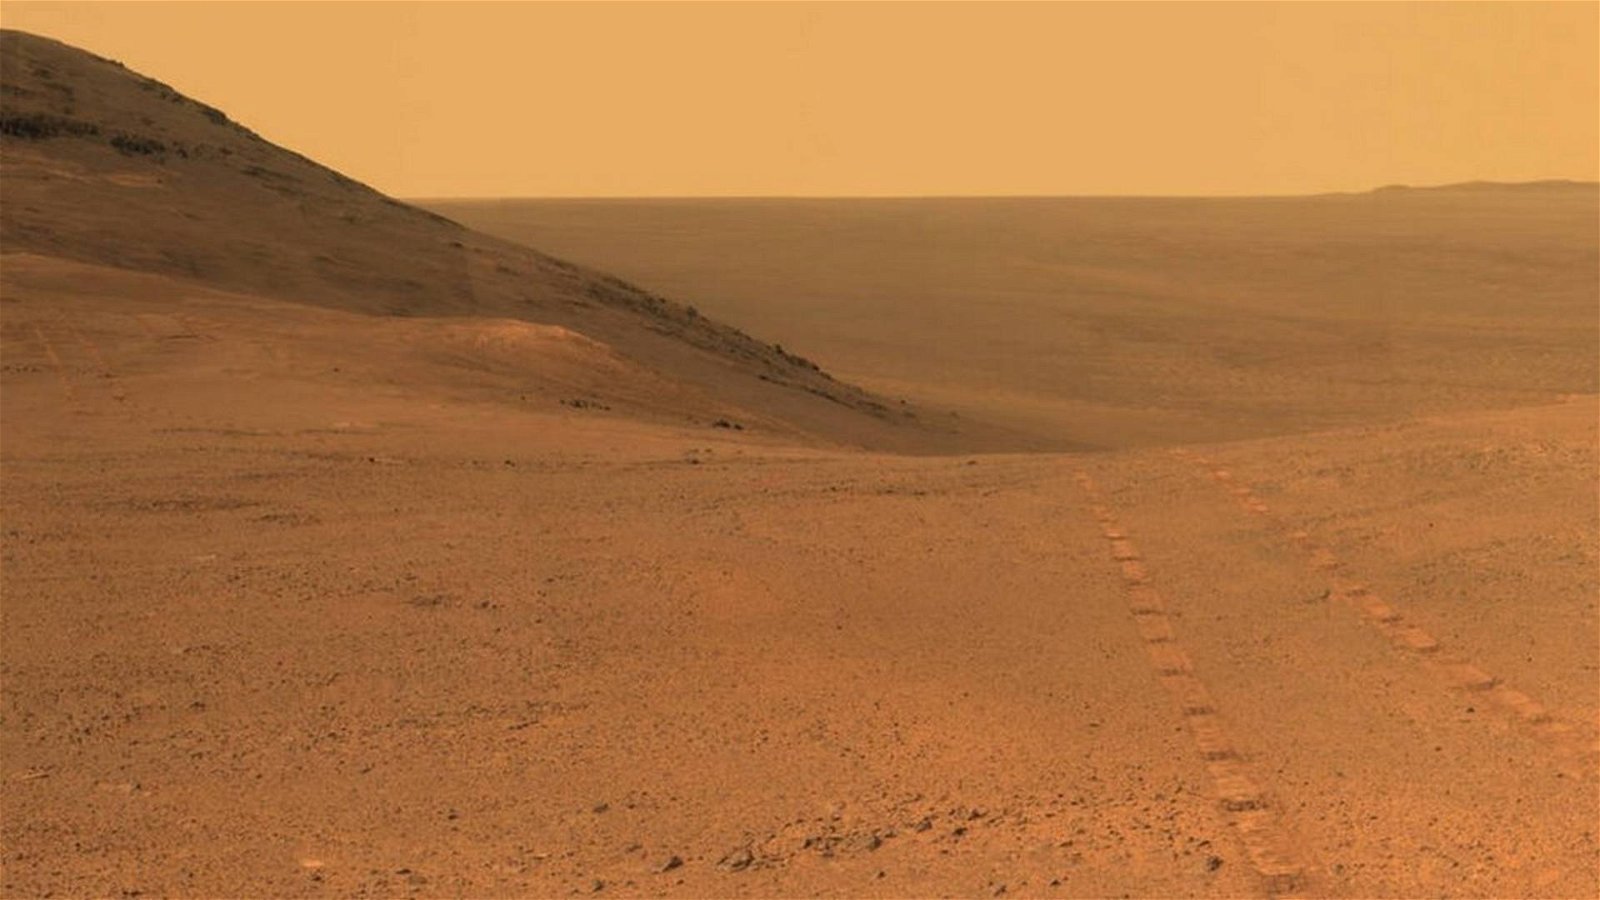 Immagine di Rover Opportunity, la NASA si riunisce oggi in diretta mondiale per decidere cosa fare. Qualcuno parla di funerale annunciato